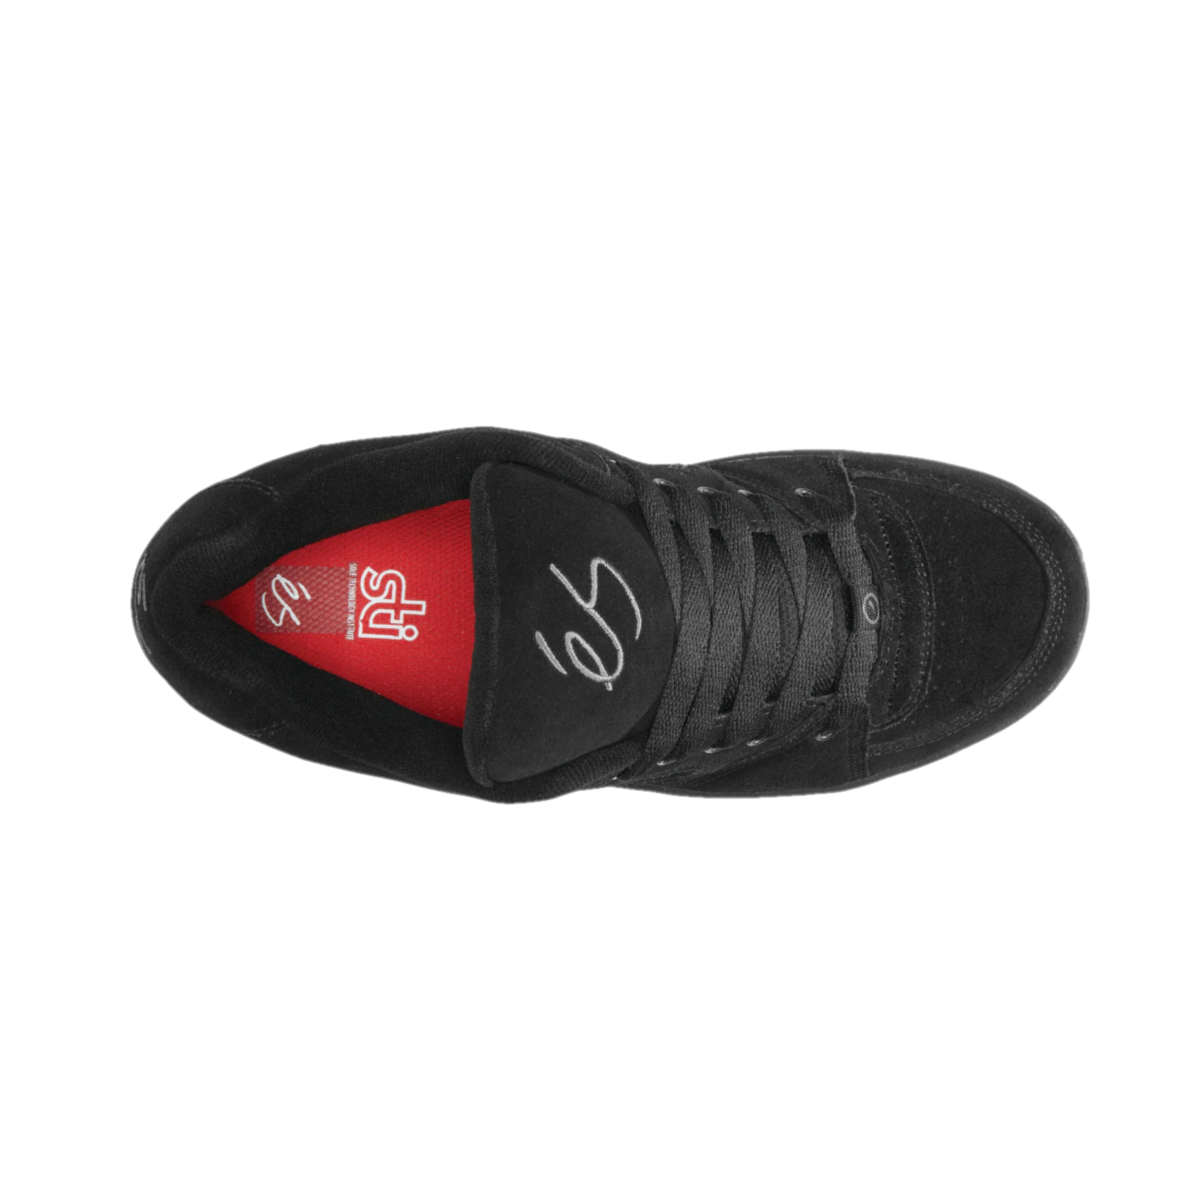 ÉS 5101000139/001 ACCEL OG MN'S (Medium) Black Suede Skate Shoes